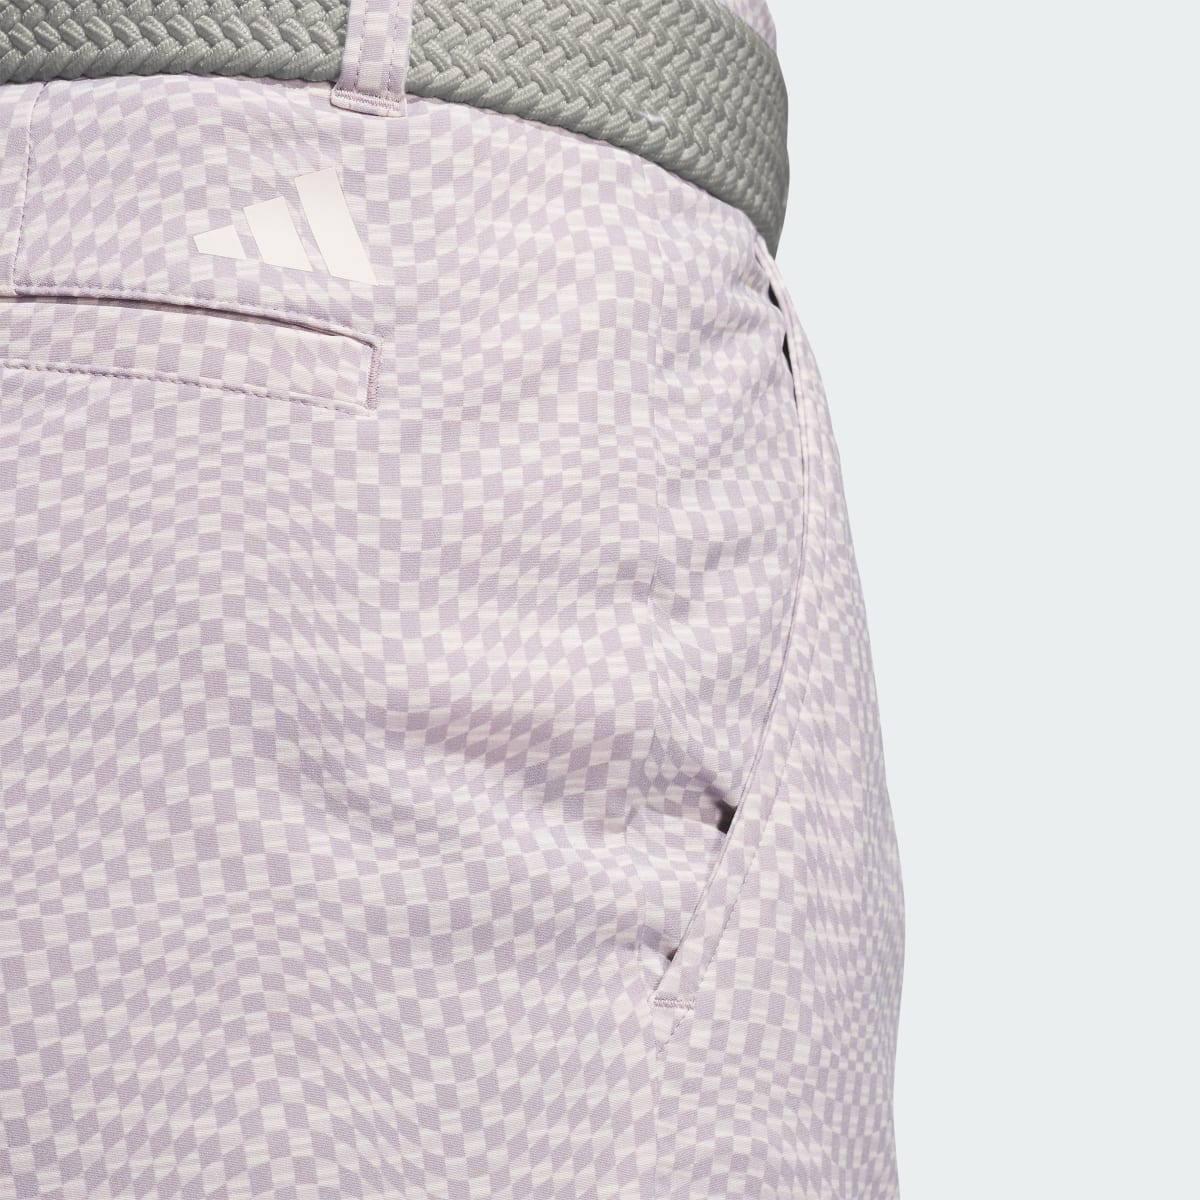 Adidas Ultimate365 Printed Shorts. 5